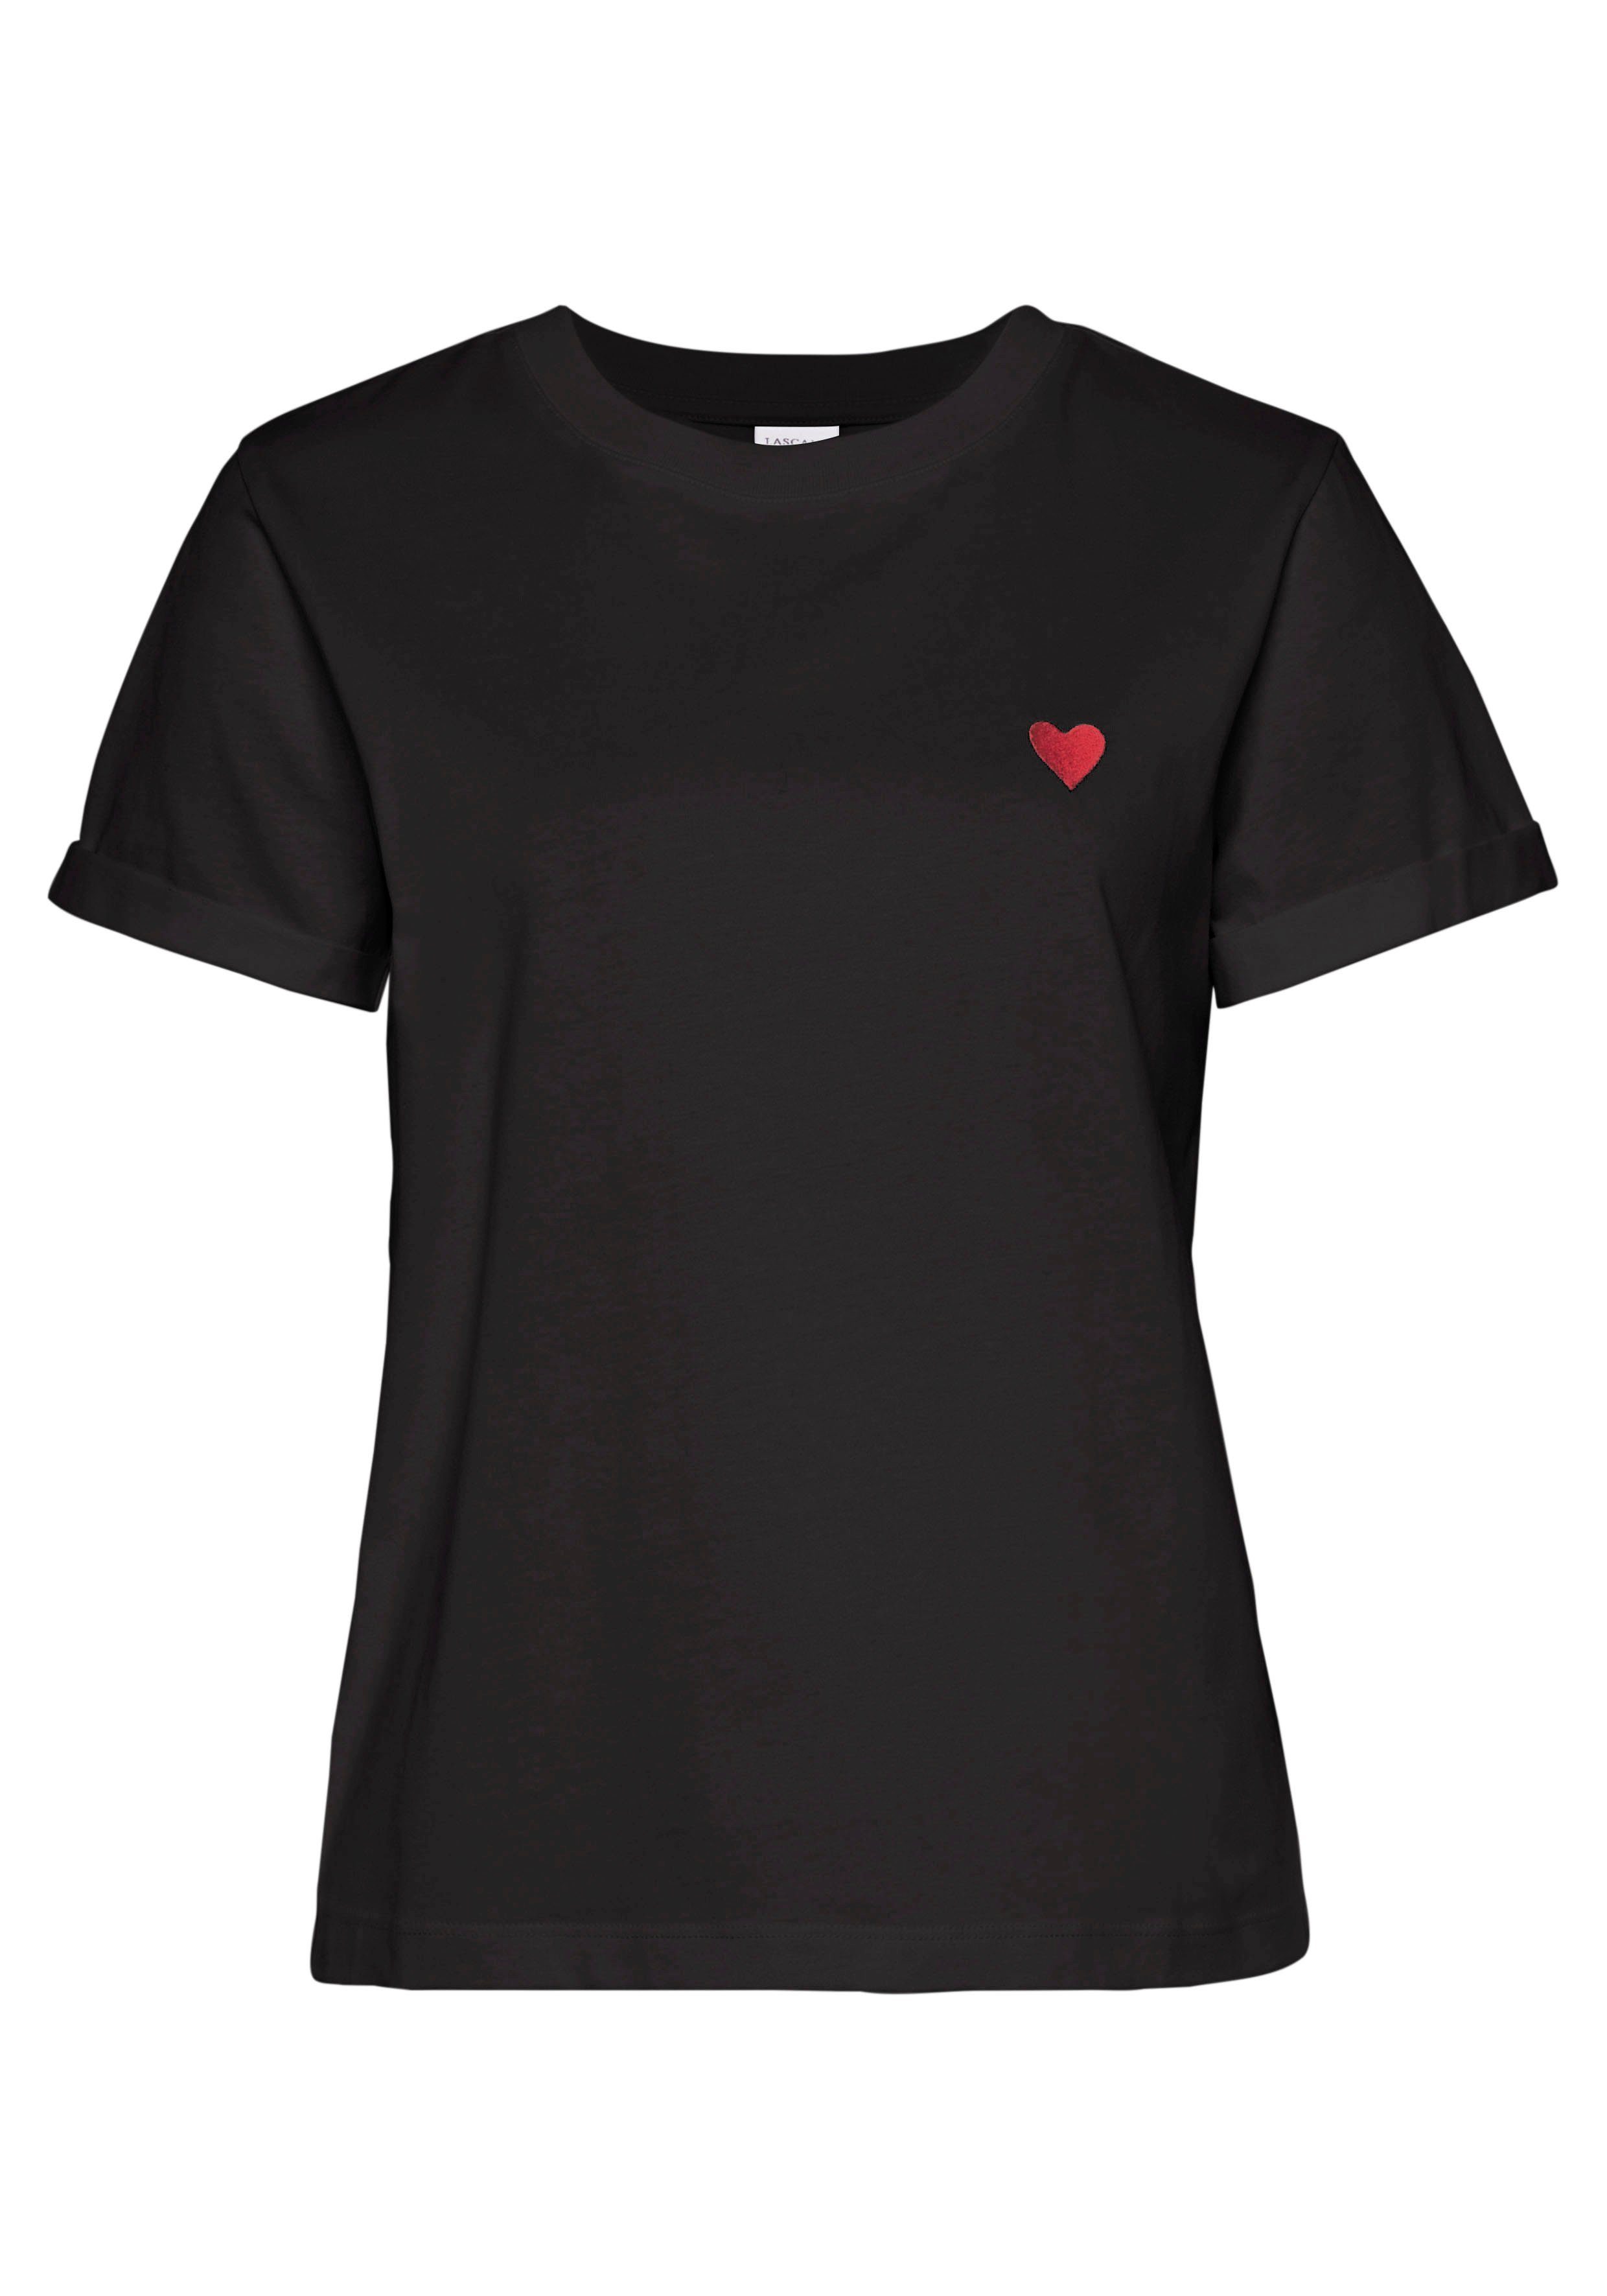 LASCANA T-Shirt mit süßer Baumwolle Herz-Stickerei, Kurzarmshirt schwarz aus